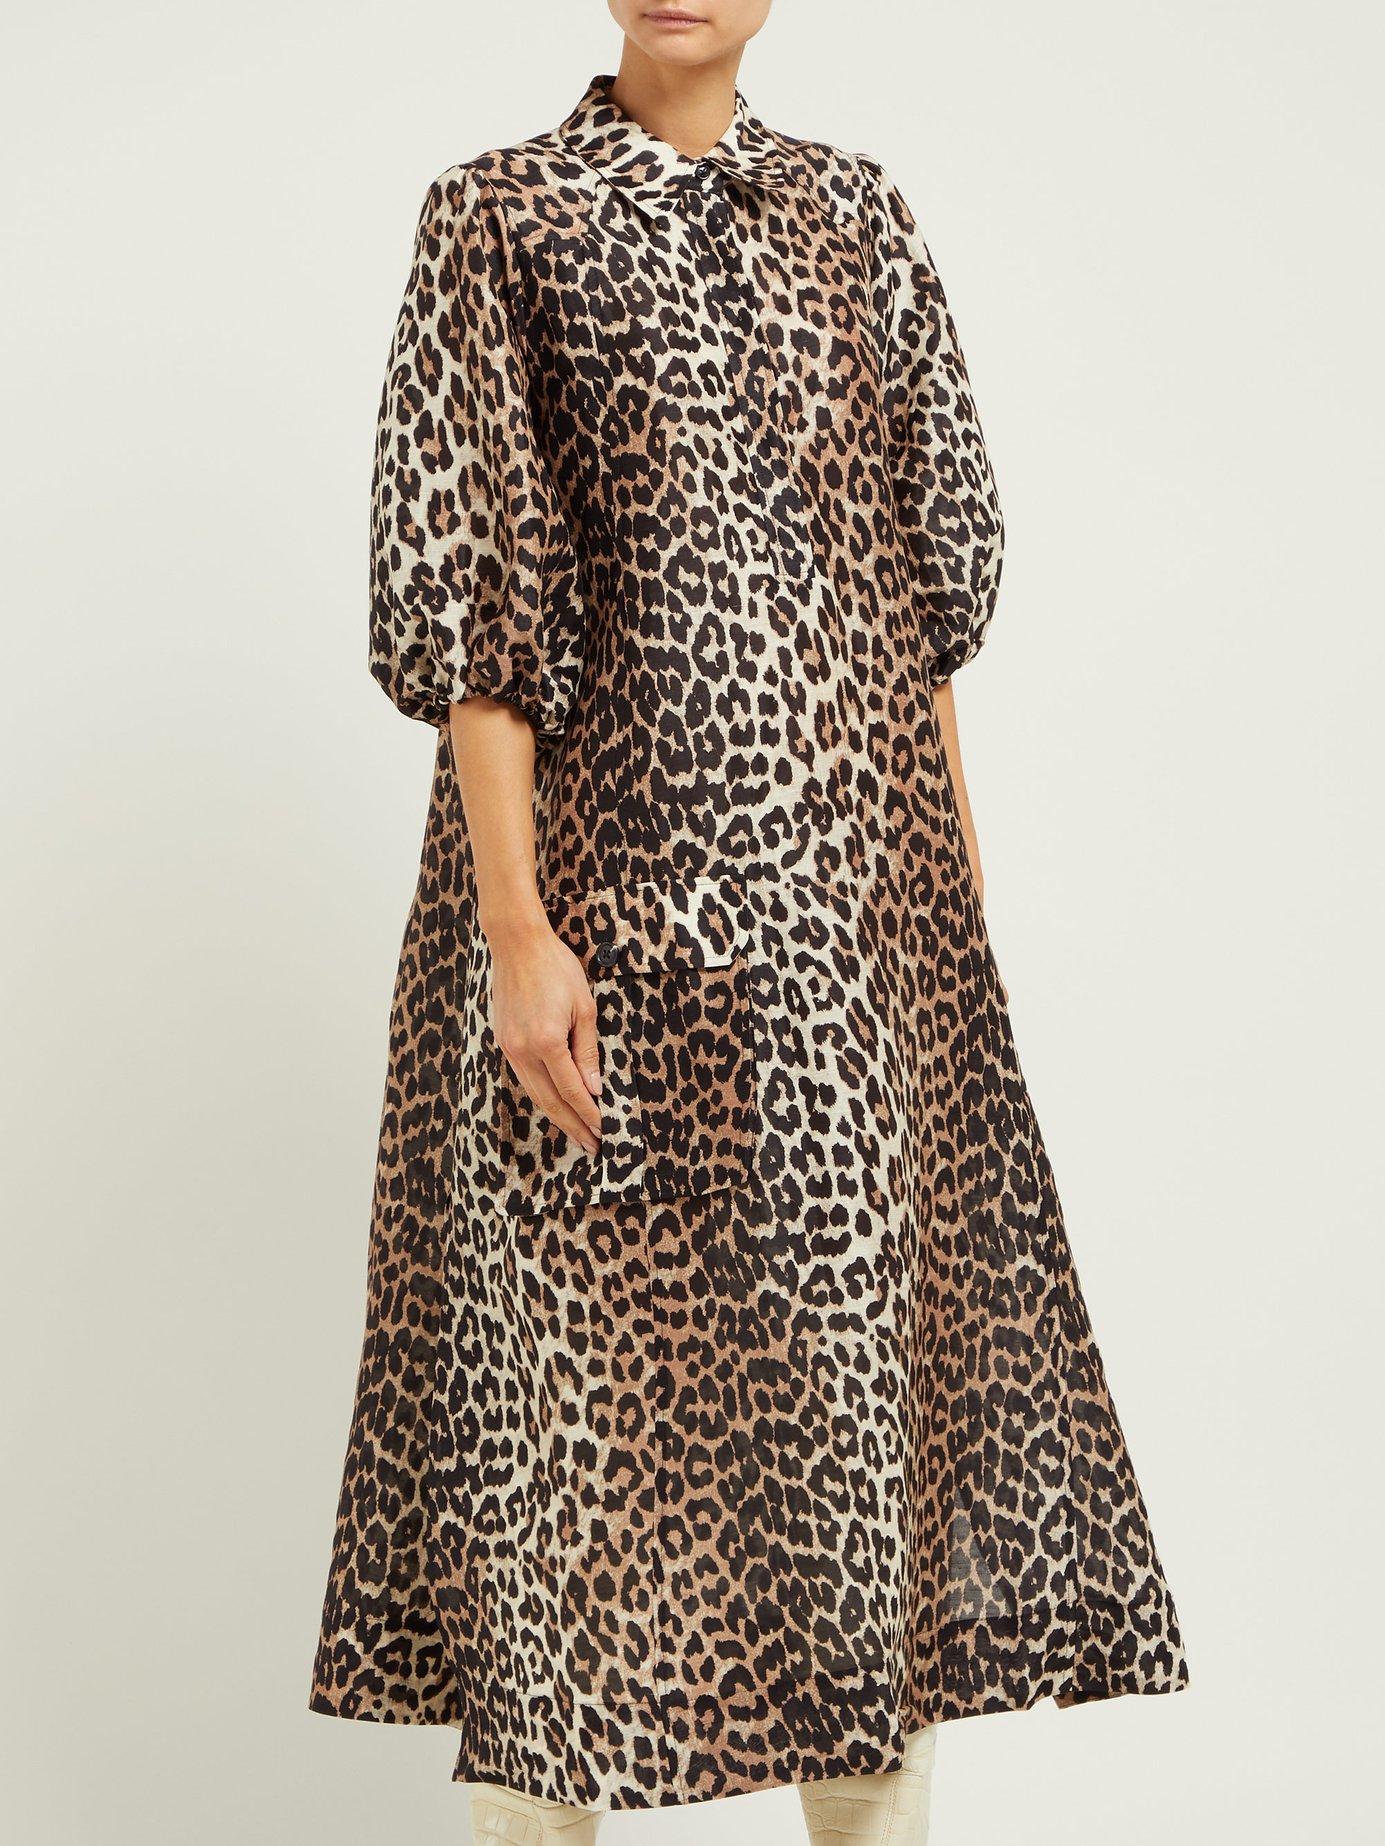 Ganni Cedar Leopard Linen & Silk Dress - Lyst